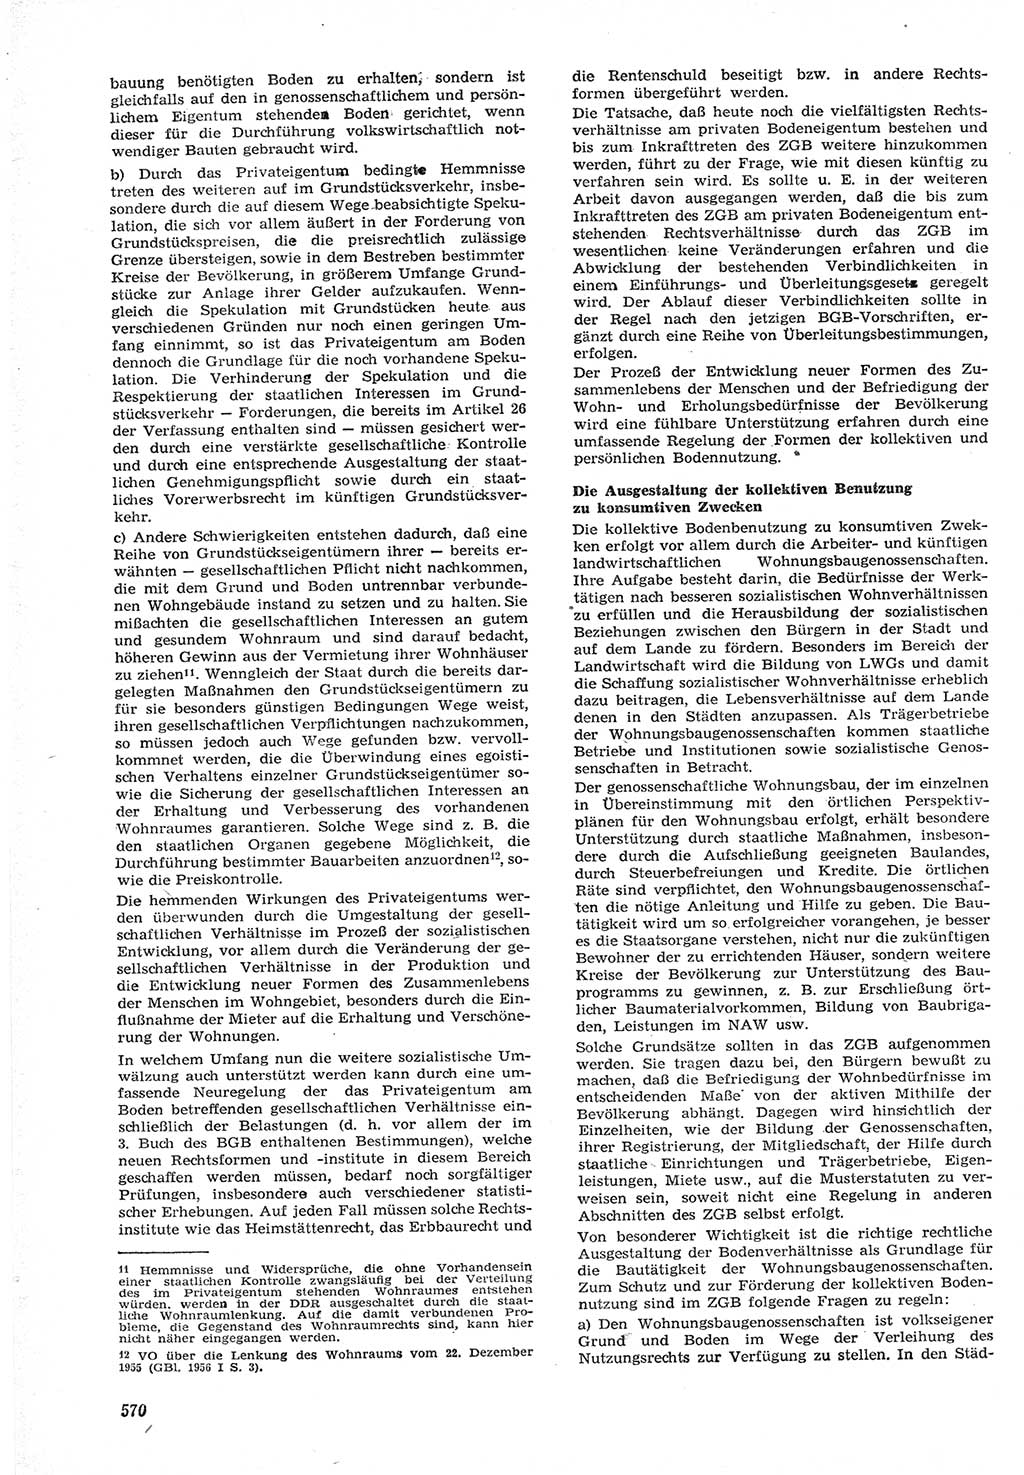 Neue Justiz (NJ), Zeitschrift für Recht und Rechtswissenschaft [Deutsche Demokratische Republik (DDR)], 15. Jahrgang 1961, Seite 570 (NJ DDR 1961, S. 570)